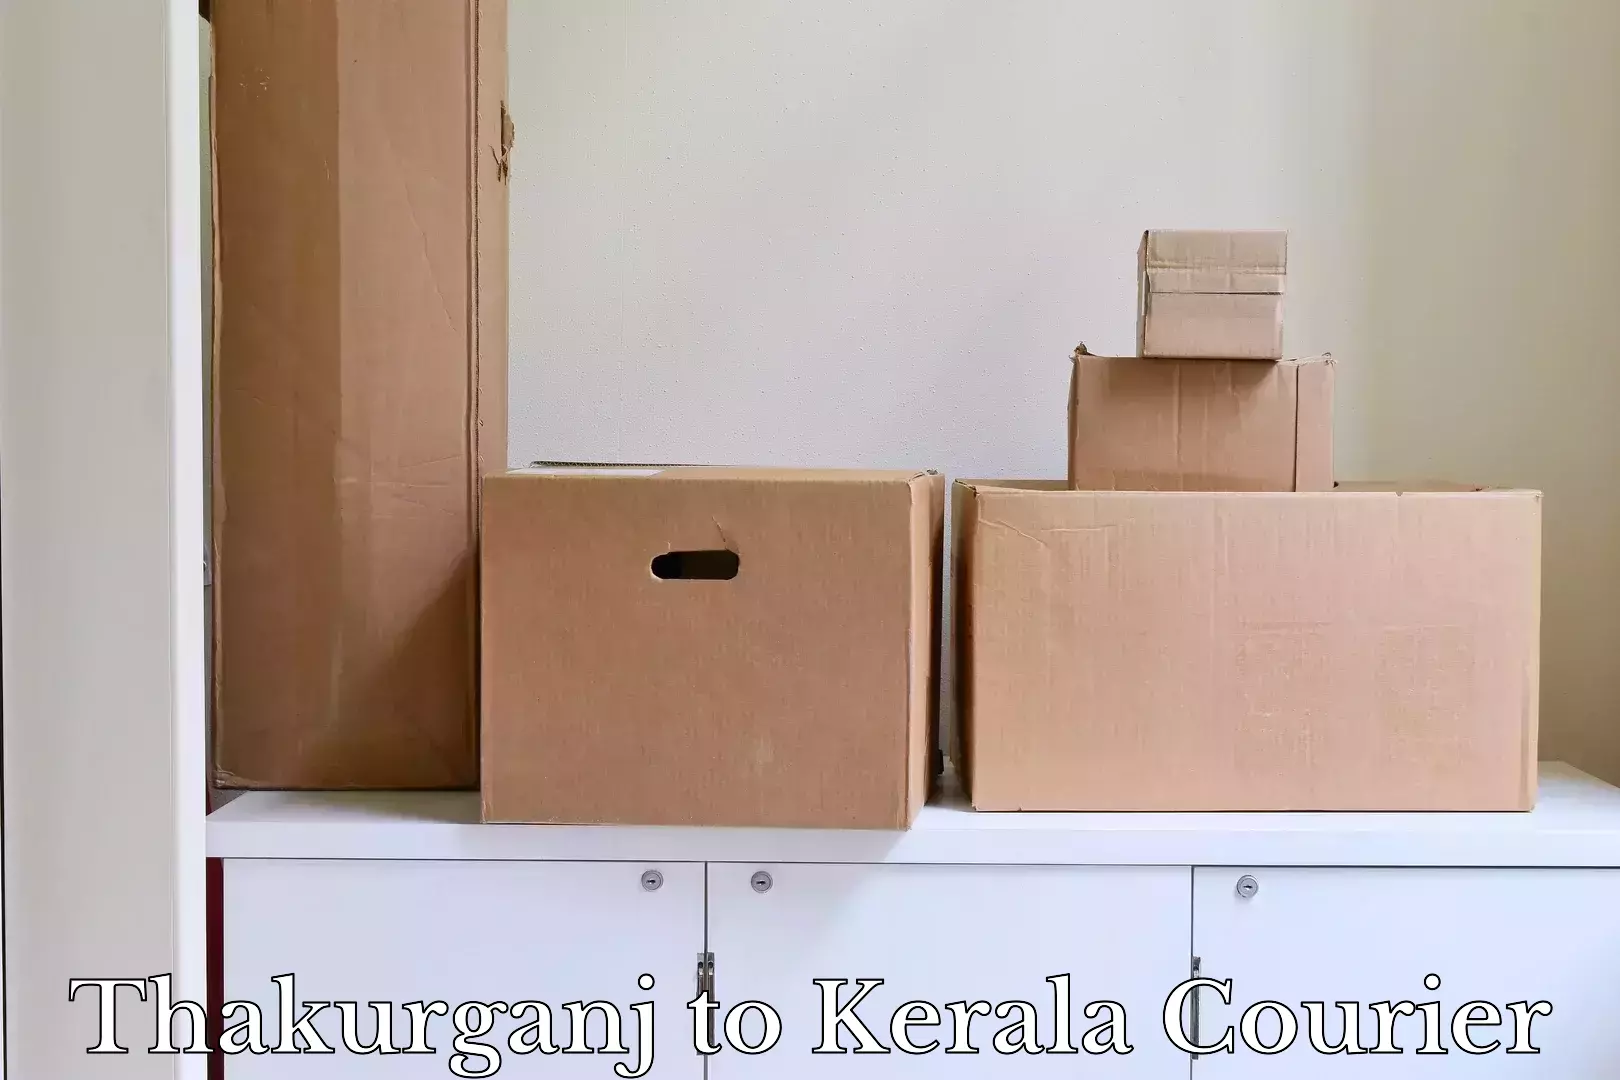 Customized luggage delivery Thakurganj to Kottarakkara